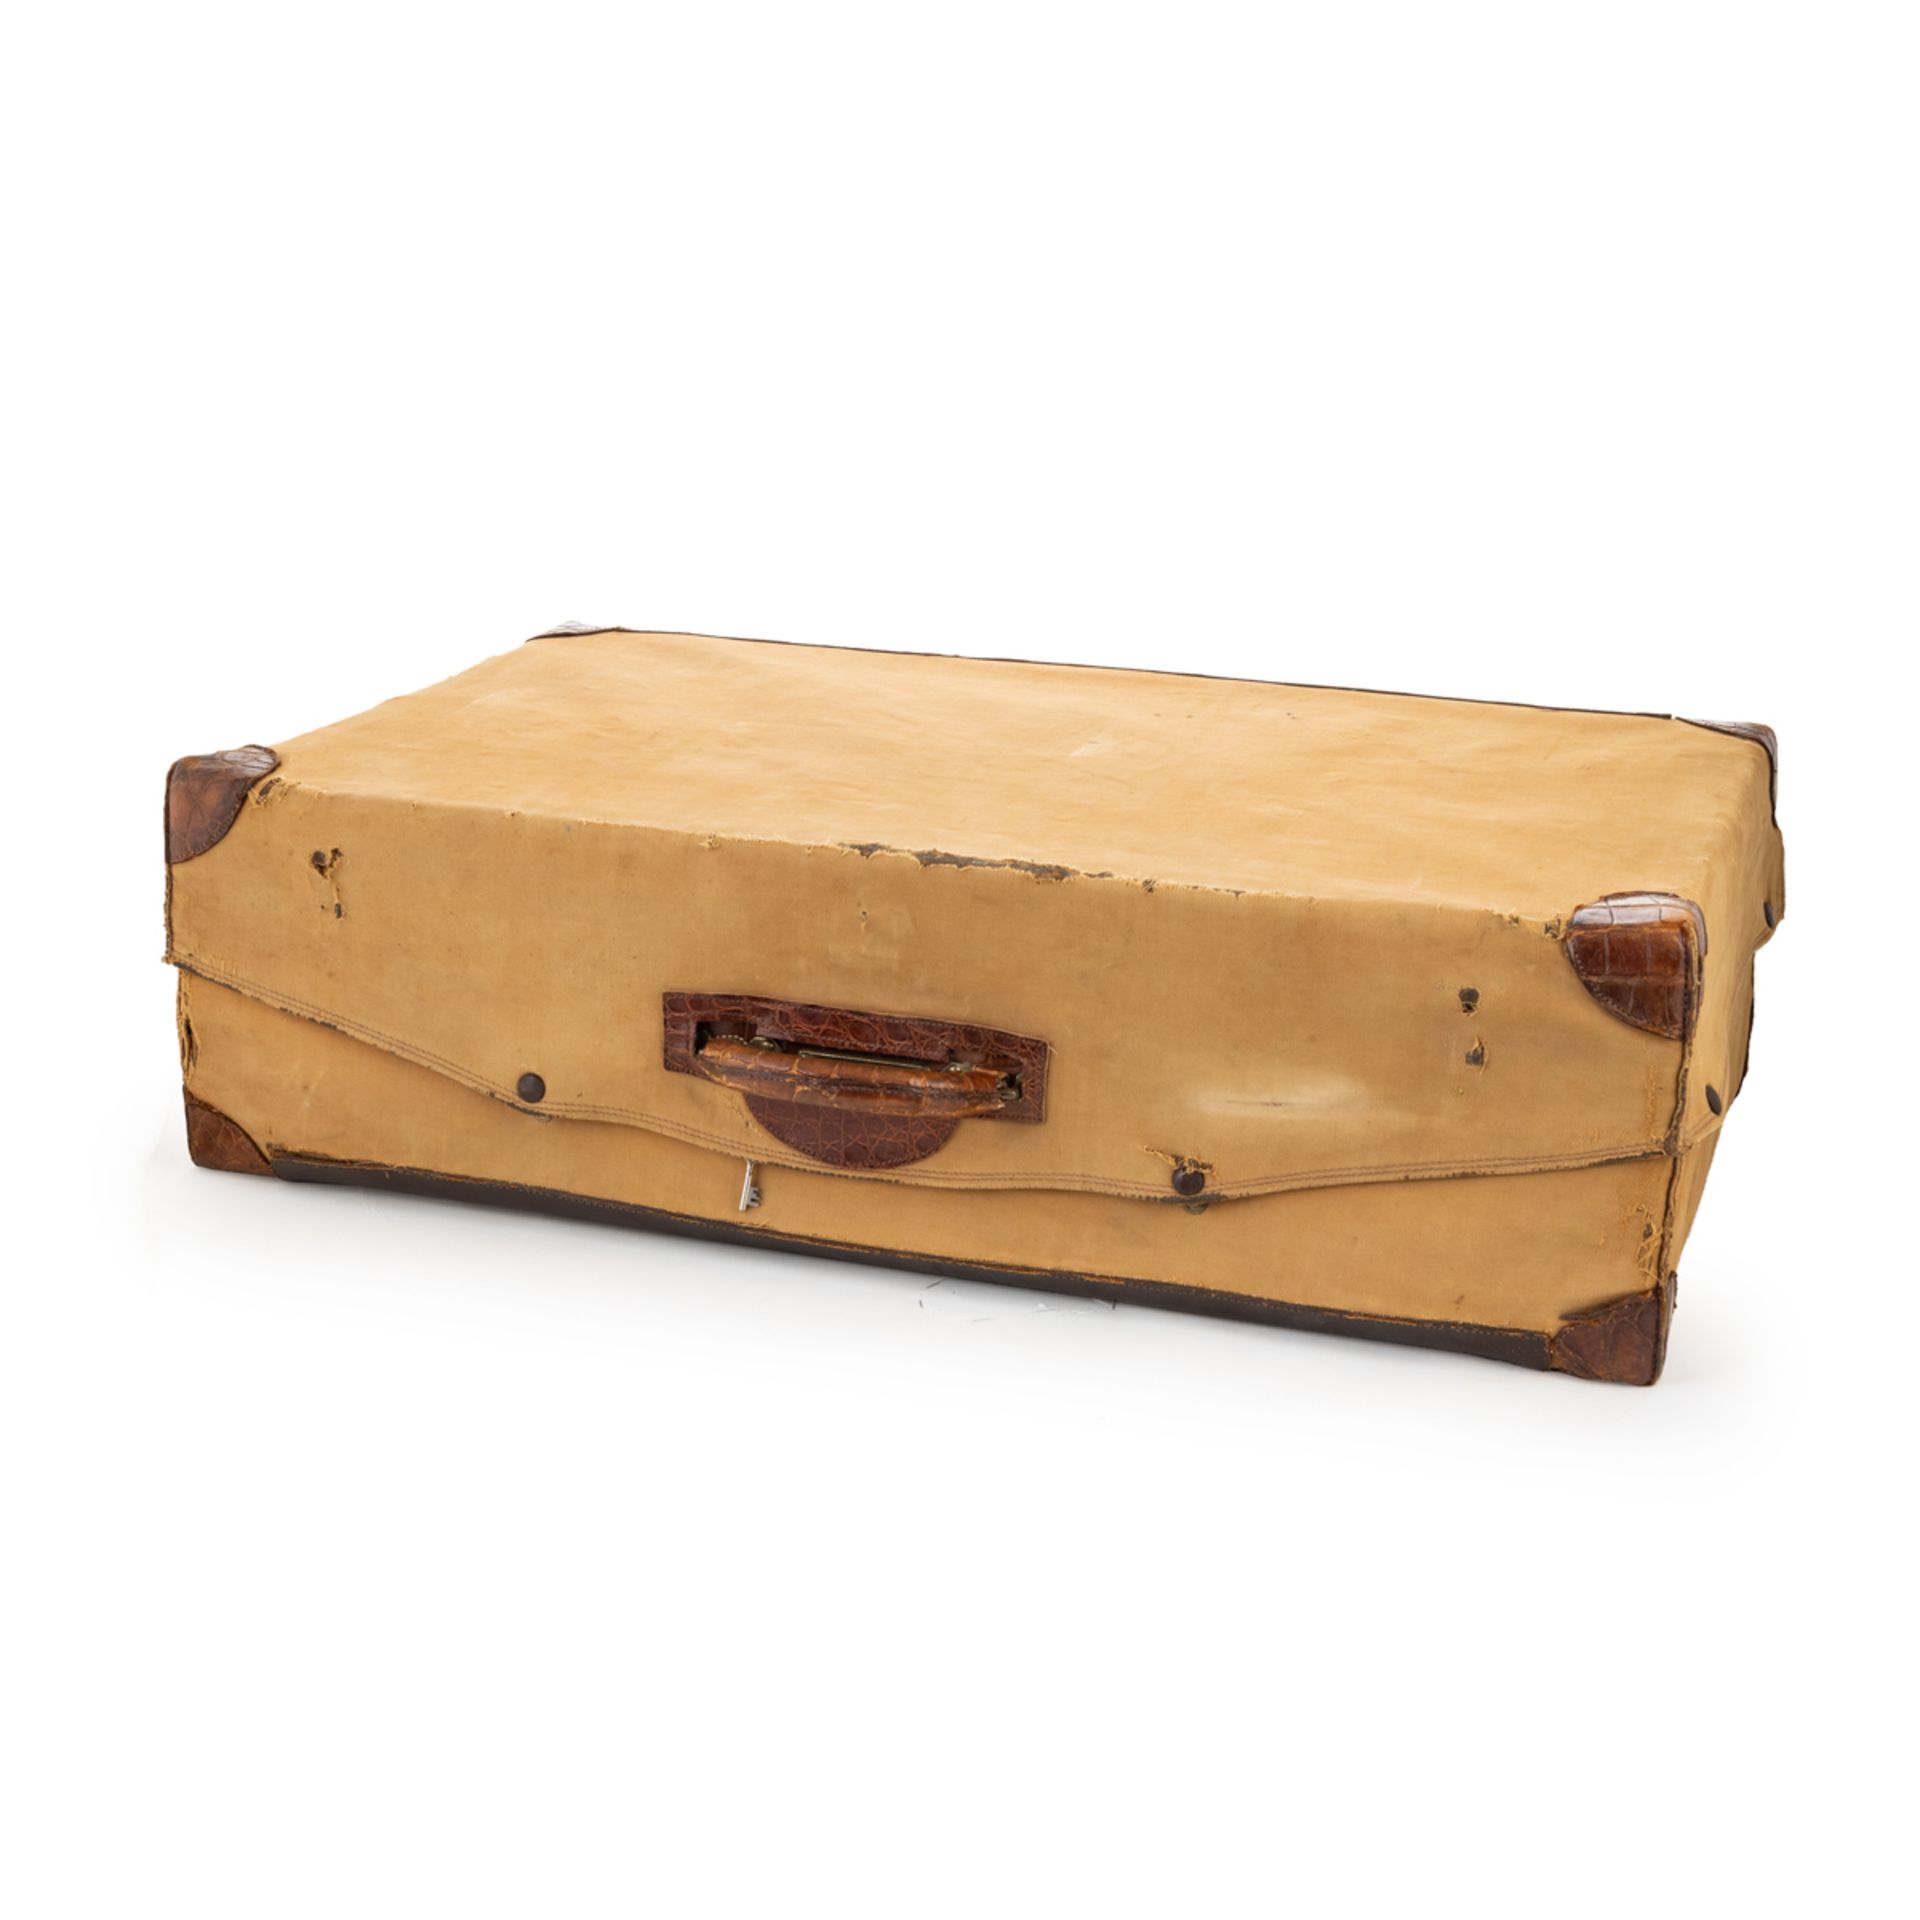 Louis Vuitton vintage suitcase - Image 3 of 8